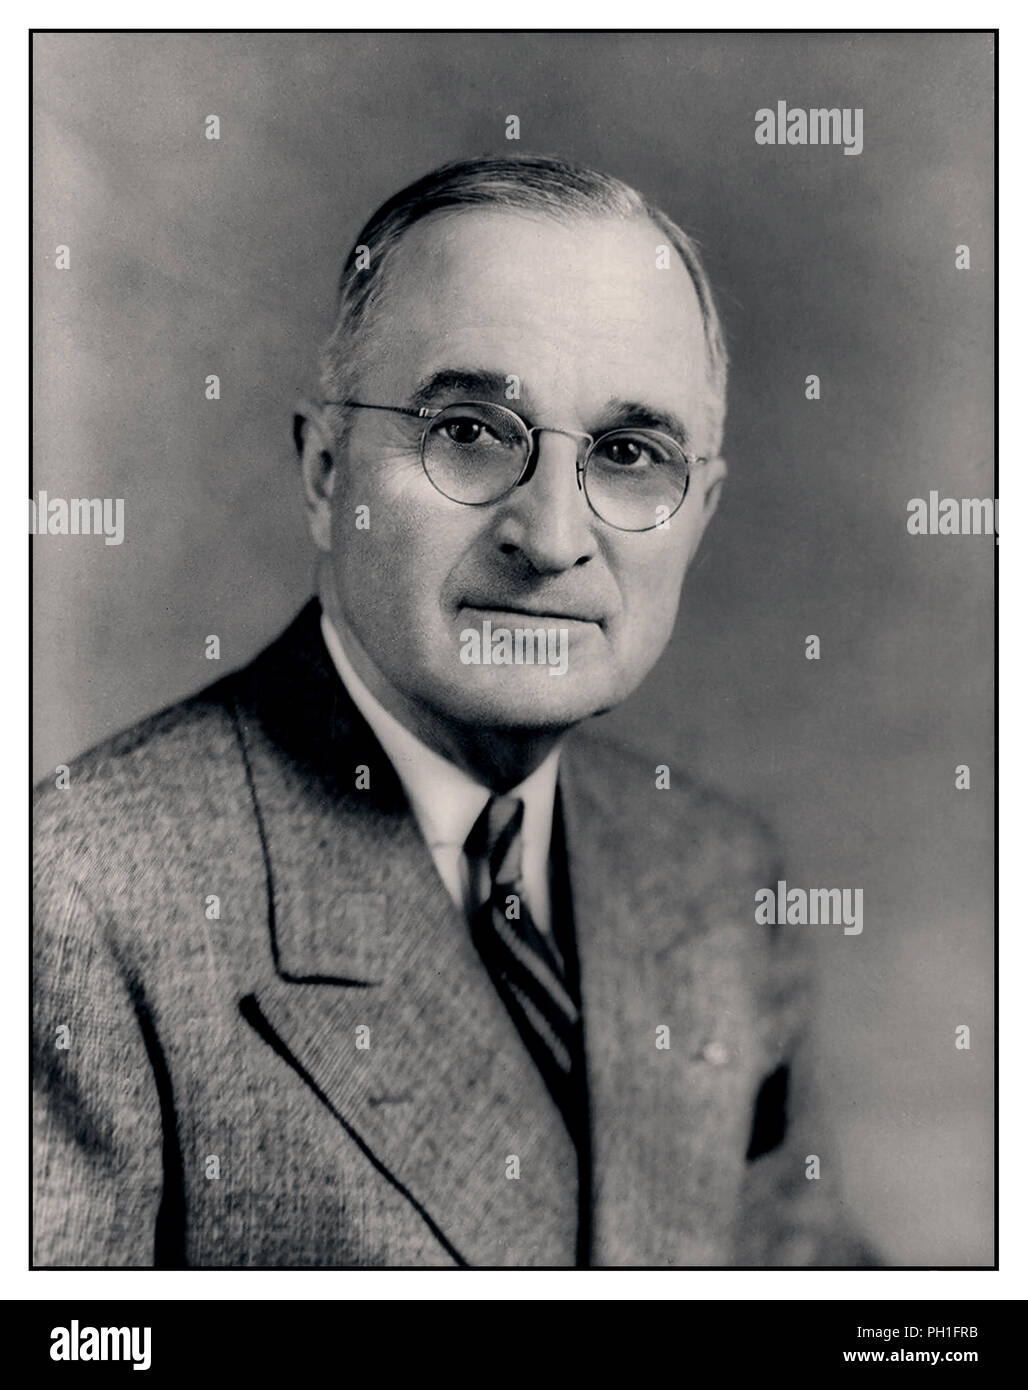 Vintage formale Portrait von Demokrat Harry S. Truman der 33. Präsident der Vereinigten Staaten, der nach dem Tod von Franklin D. Roosevelt. Eine Welt krieg ich Veteran, übernahm er die Präsidentschaft während der letzten Monate des Zweiten Weltkriegs und dem Beginn des Kalten Krieges. Stockfoto